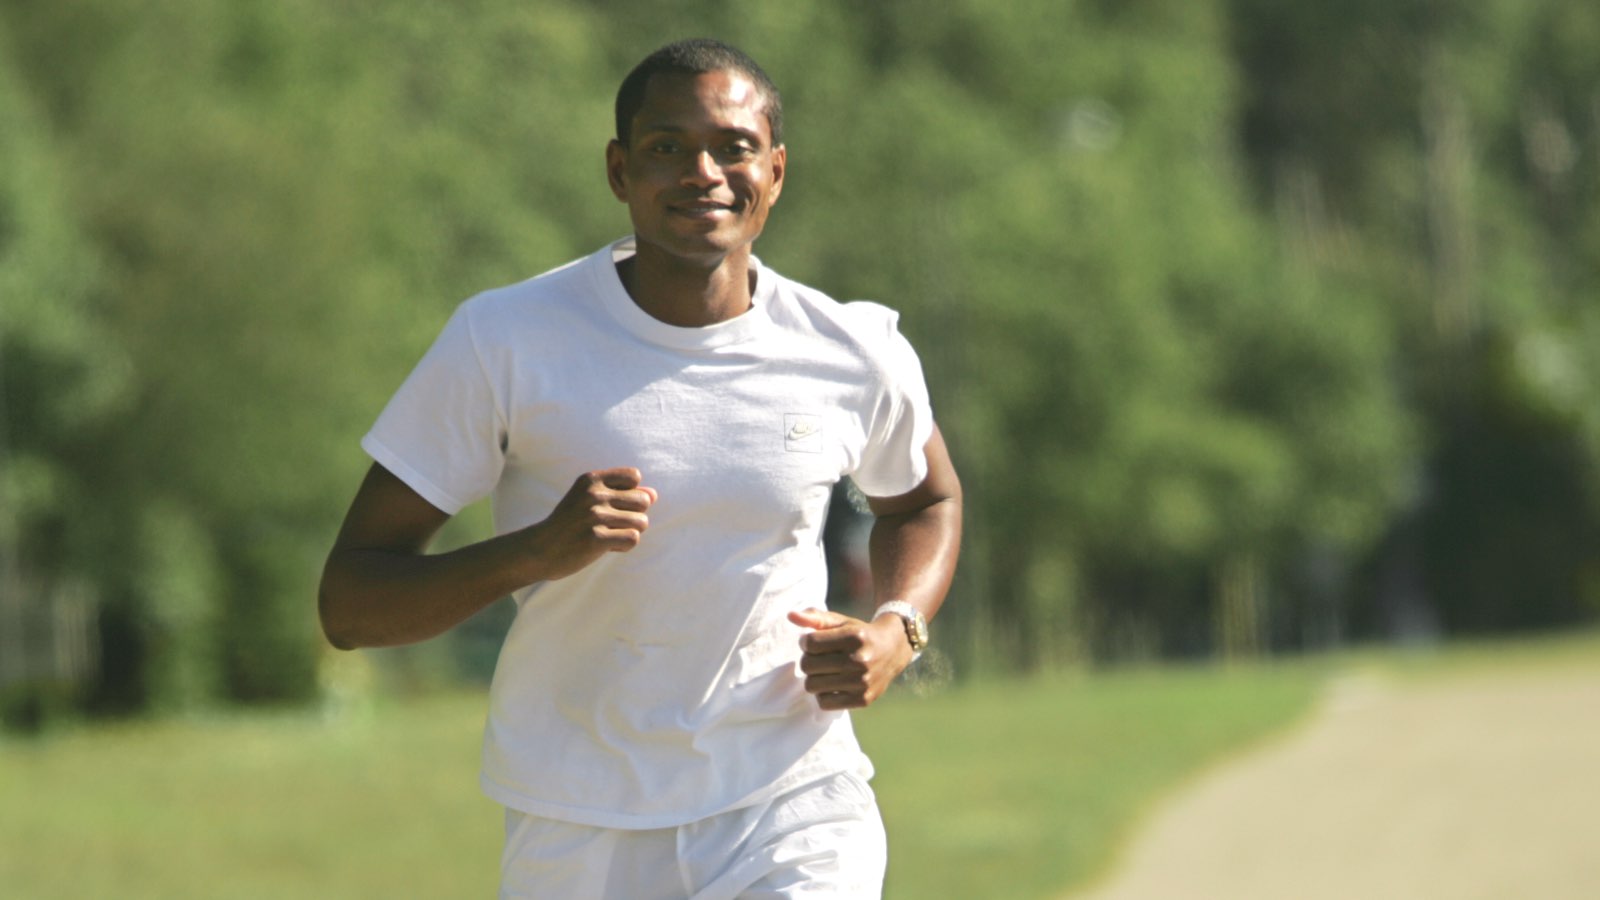 Ein Mann lächelt beim Laufen im weißen T-Shirt und in den kurzen Hosen auf einem Weg draußen nahe einem Wald.